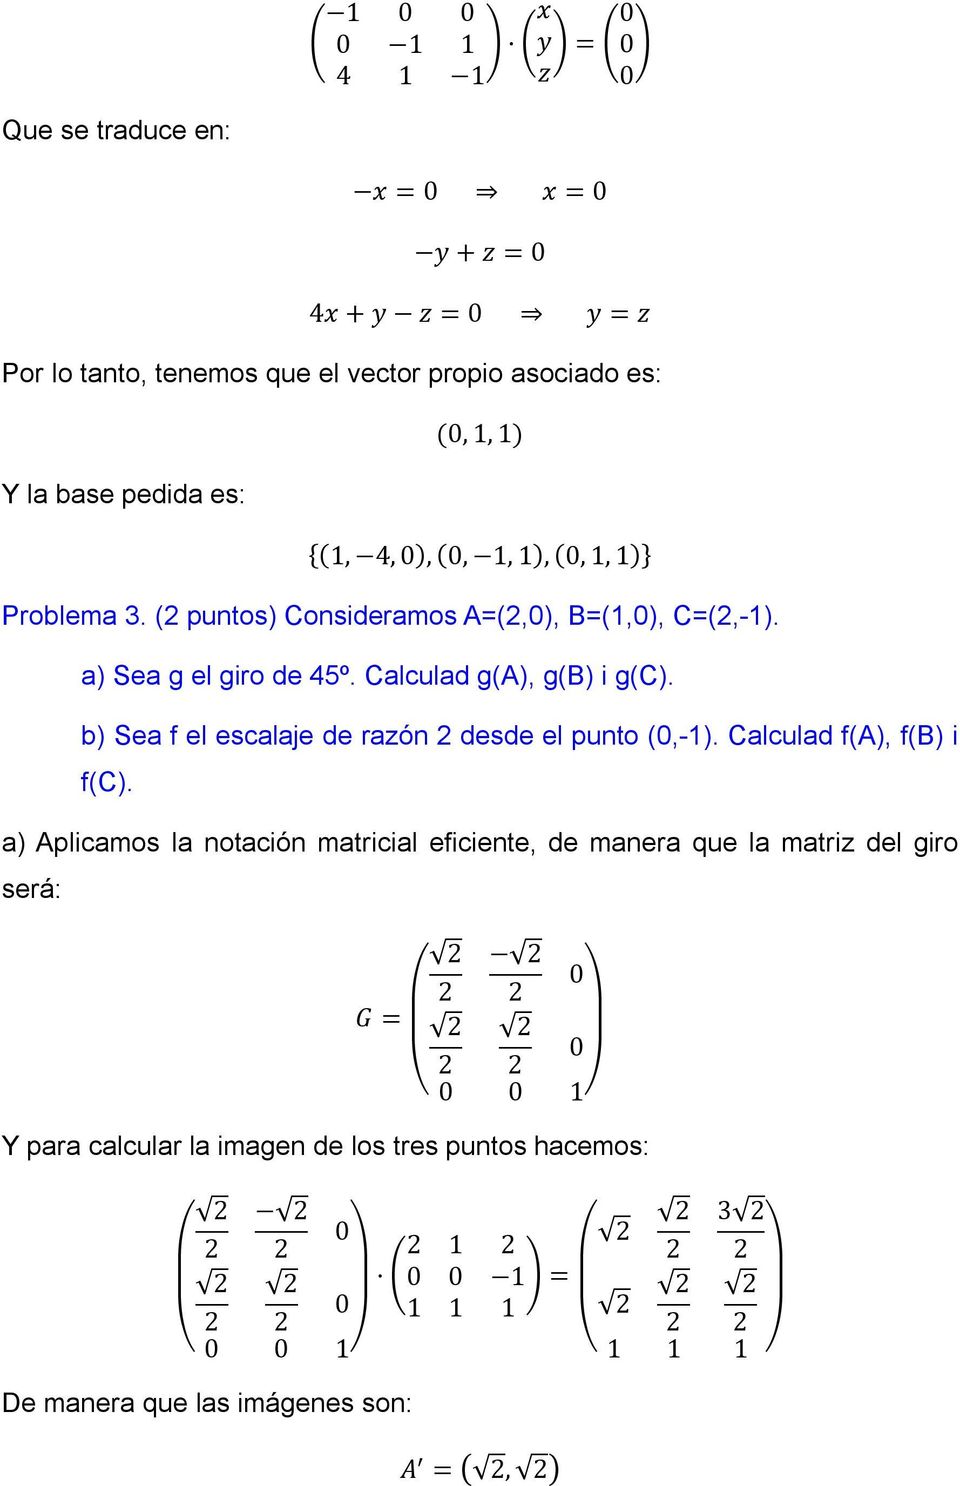 b) Sea f el escalaje de razón 2 desde el punto (0,-1). Calculad f(a), f(b) i f(c).